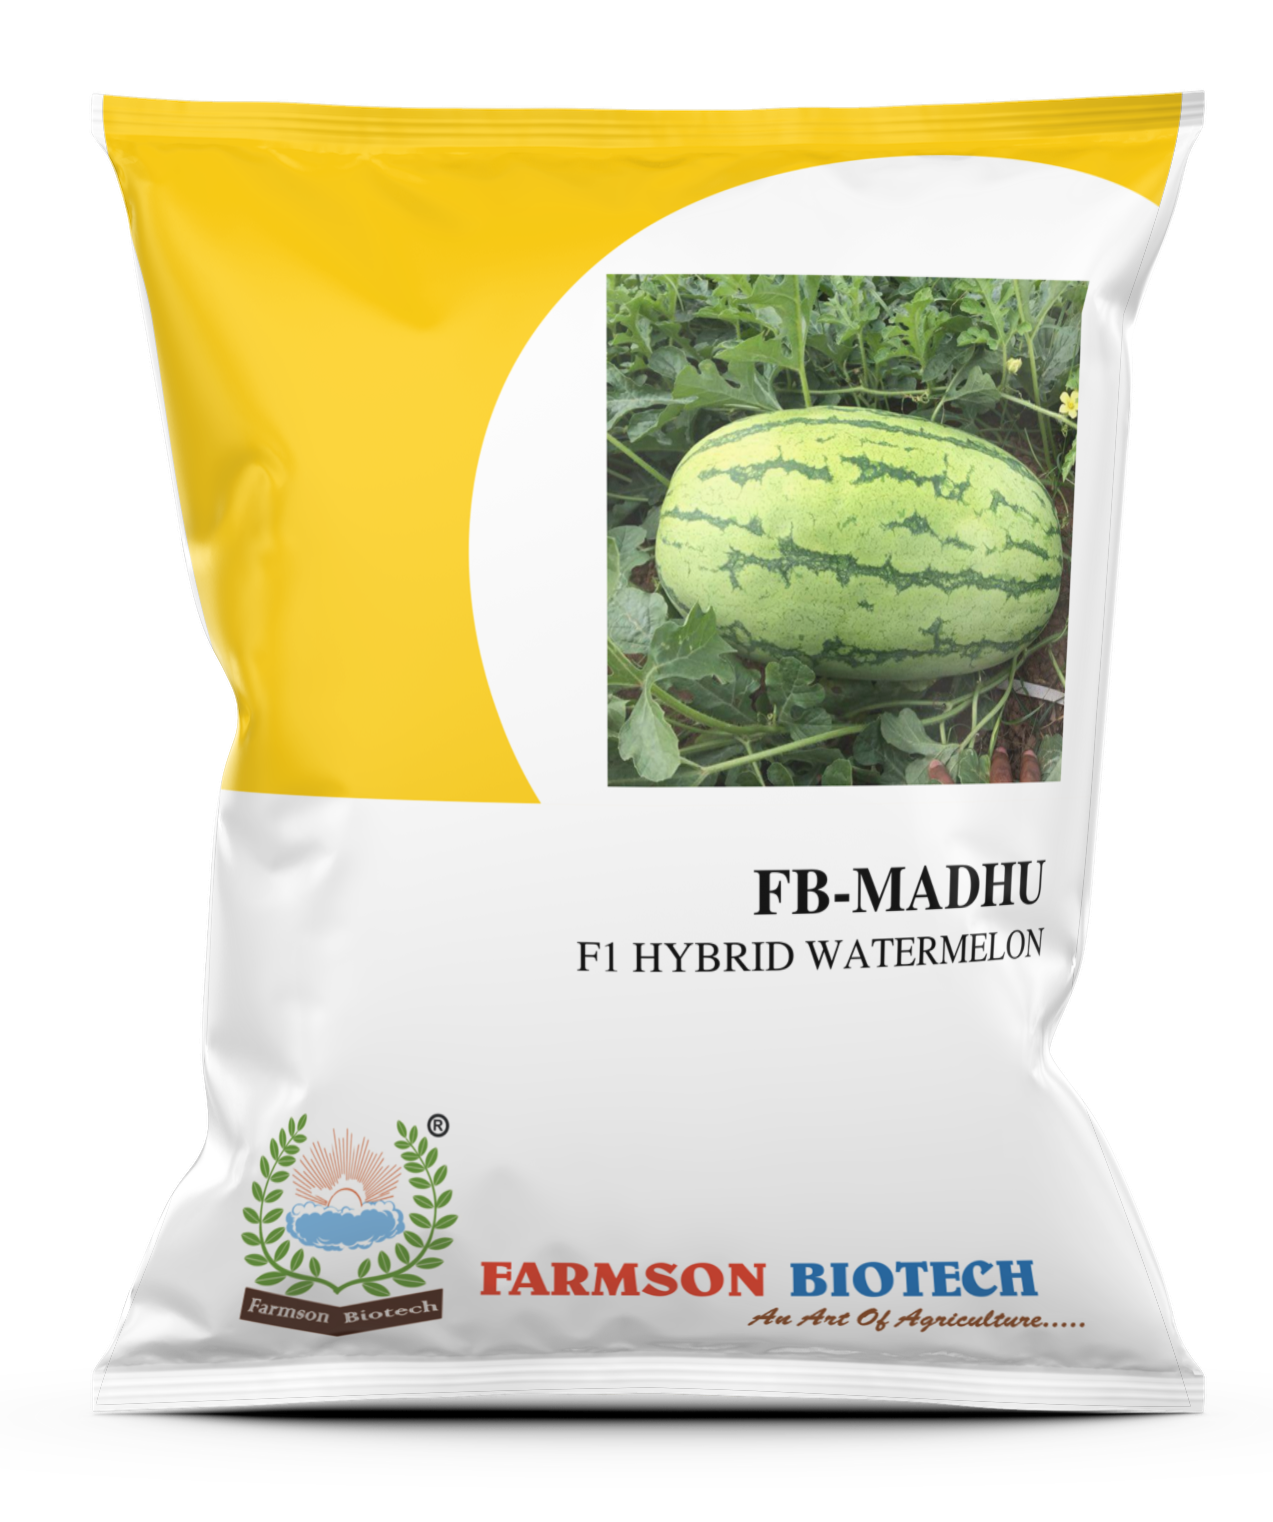 FB-MADHU F1 Hybrid Watermelon Seeds